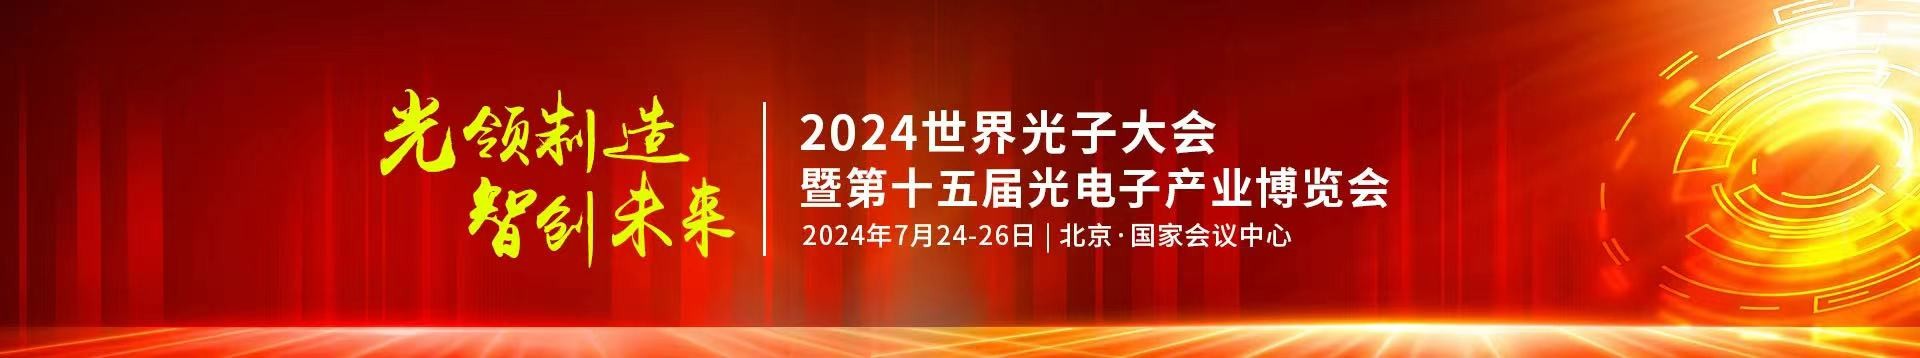 44118太阳诚公司受邀参加2024年第十五届光电子产业博览会